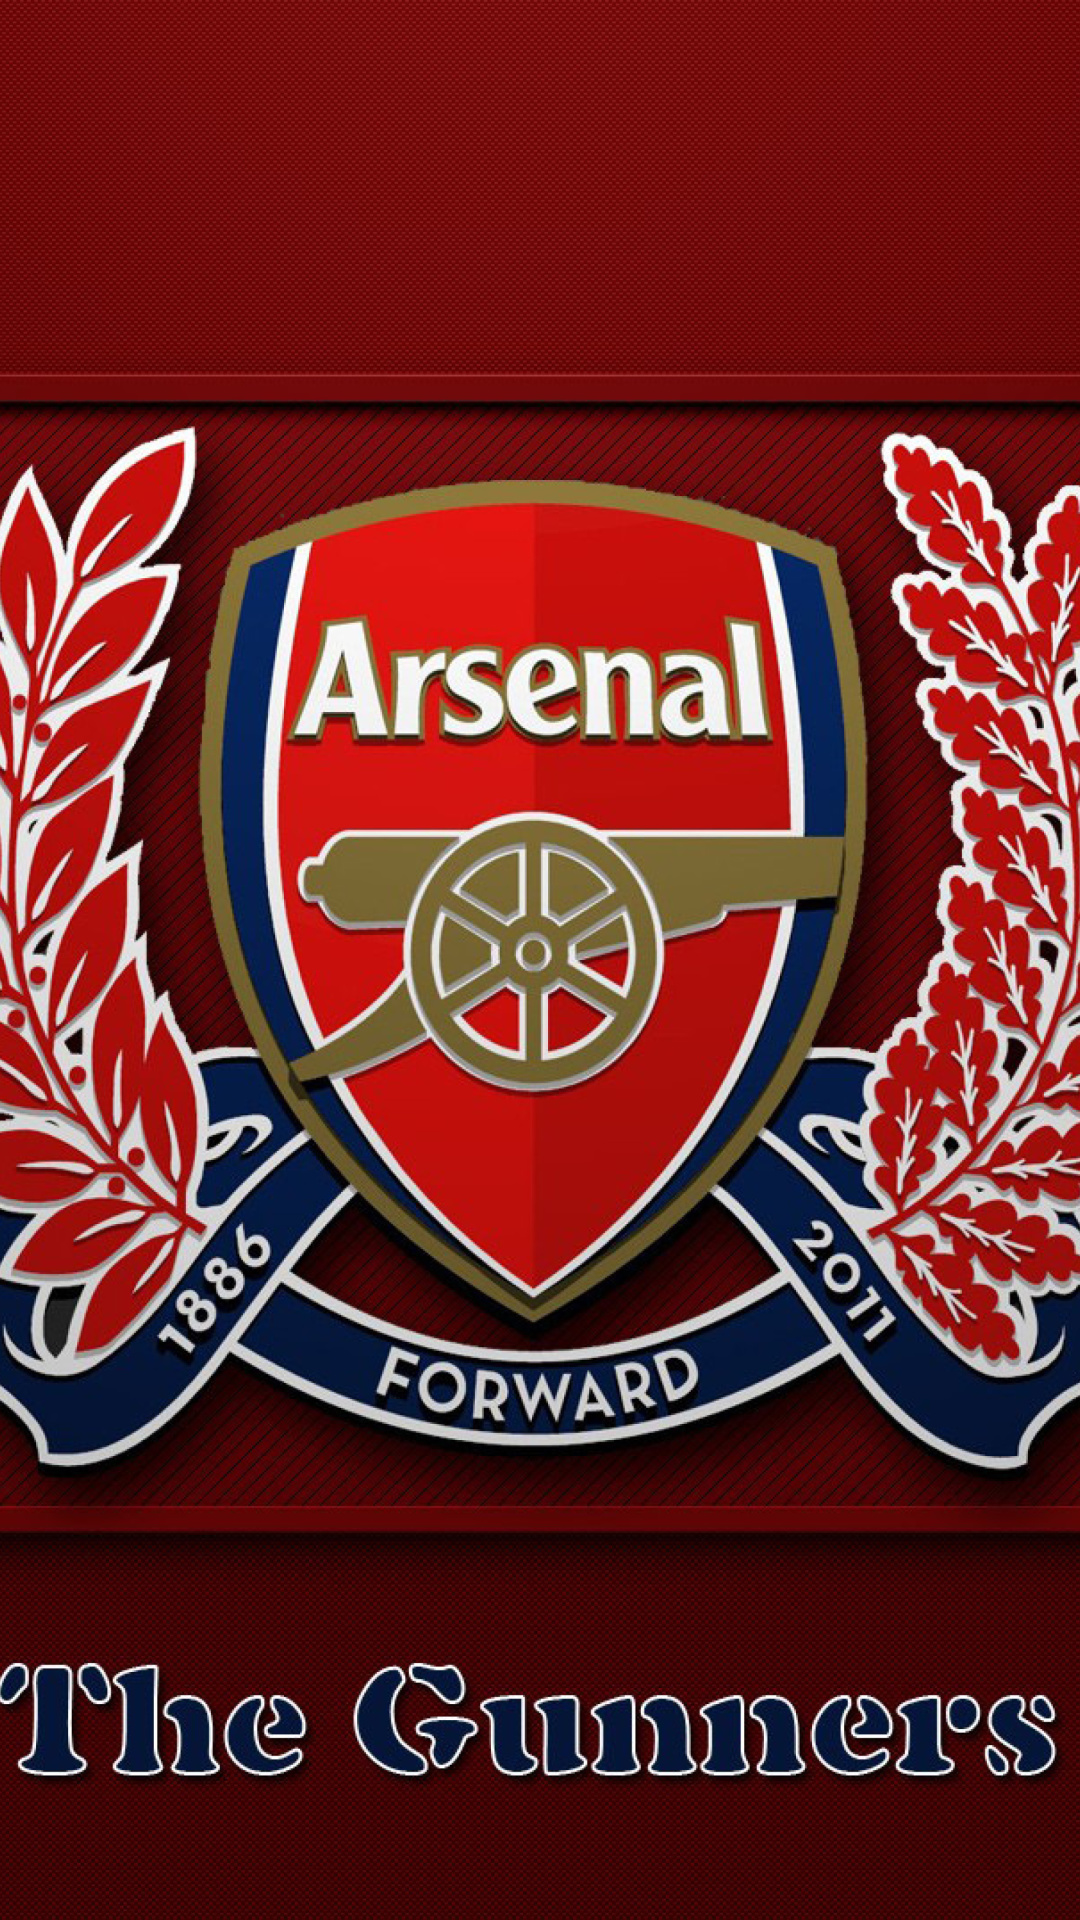 Arsenal Logo Full Hd Wallpaper For Mobile - Arsenal Logo - HD Wallpaper 